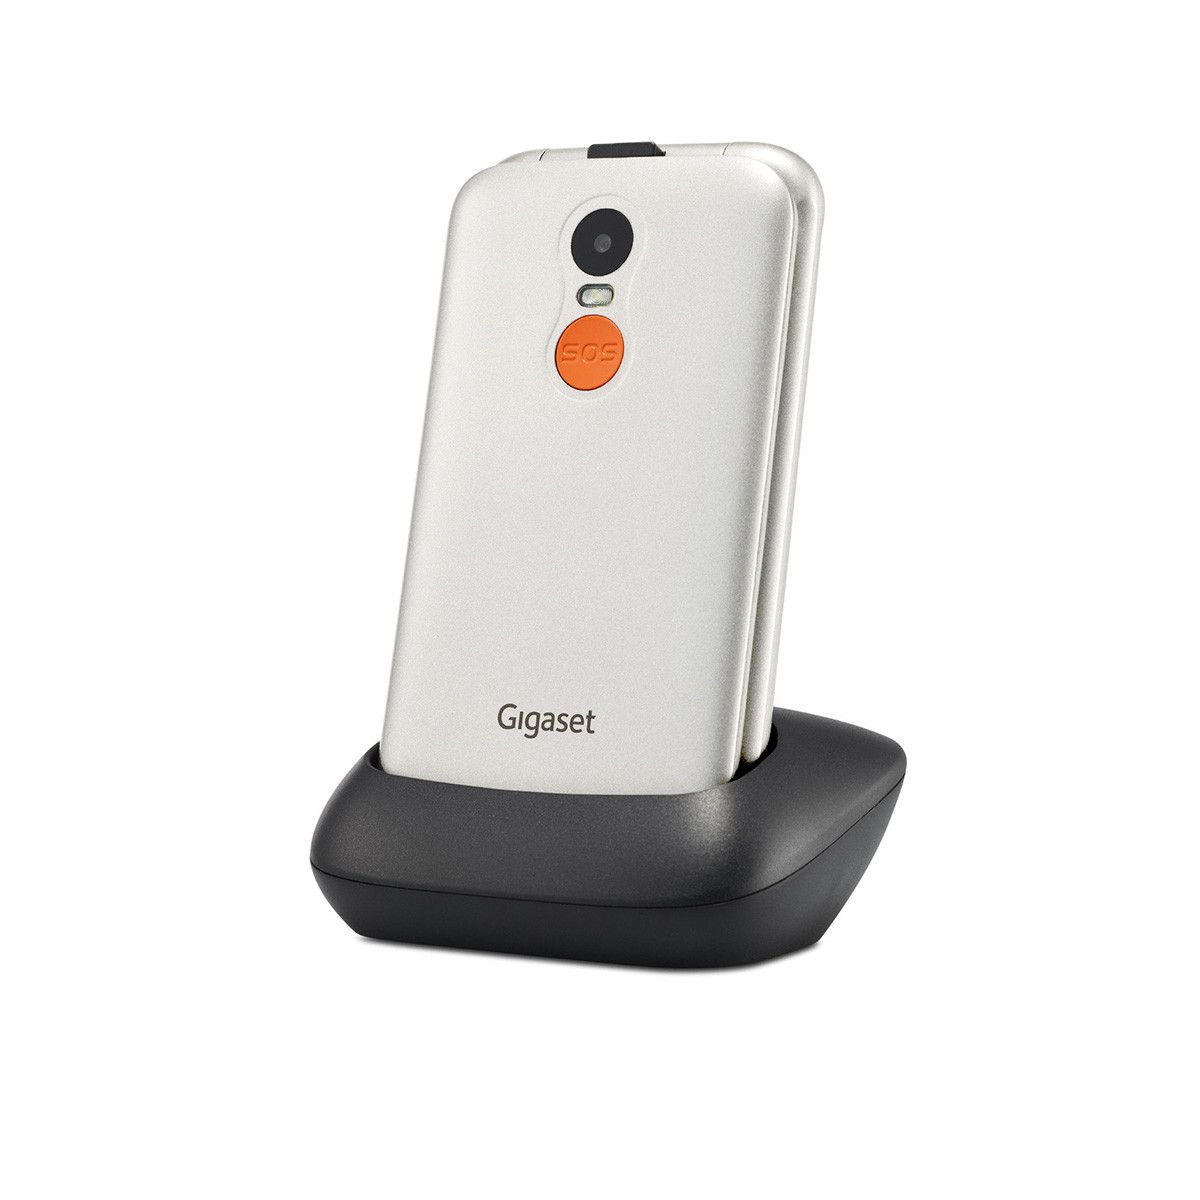 Gigaset GL590 2G Smartphone 7,11 (Weiß) Sim expert 0,3 cm Technomarkt von (2.8 MP Dual Zoll)